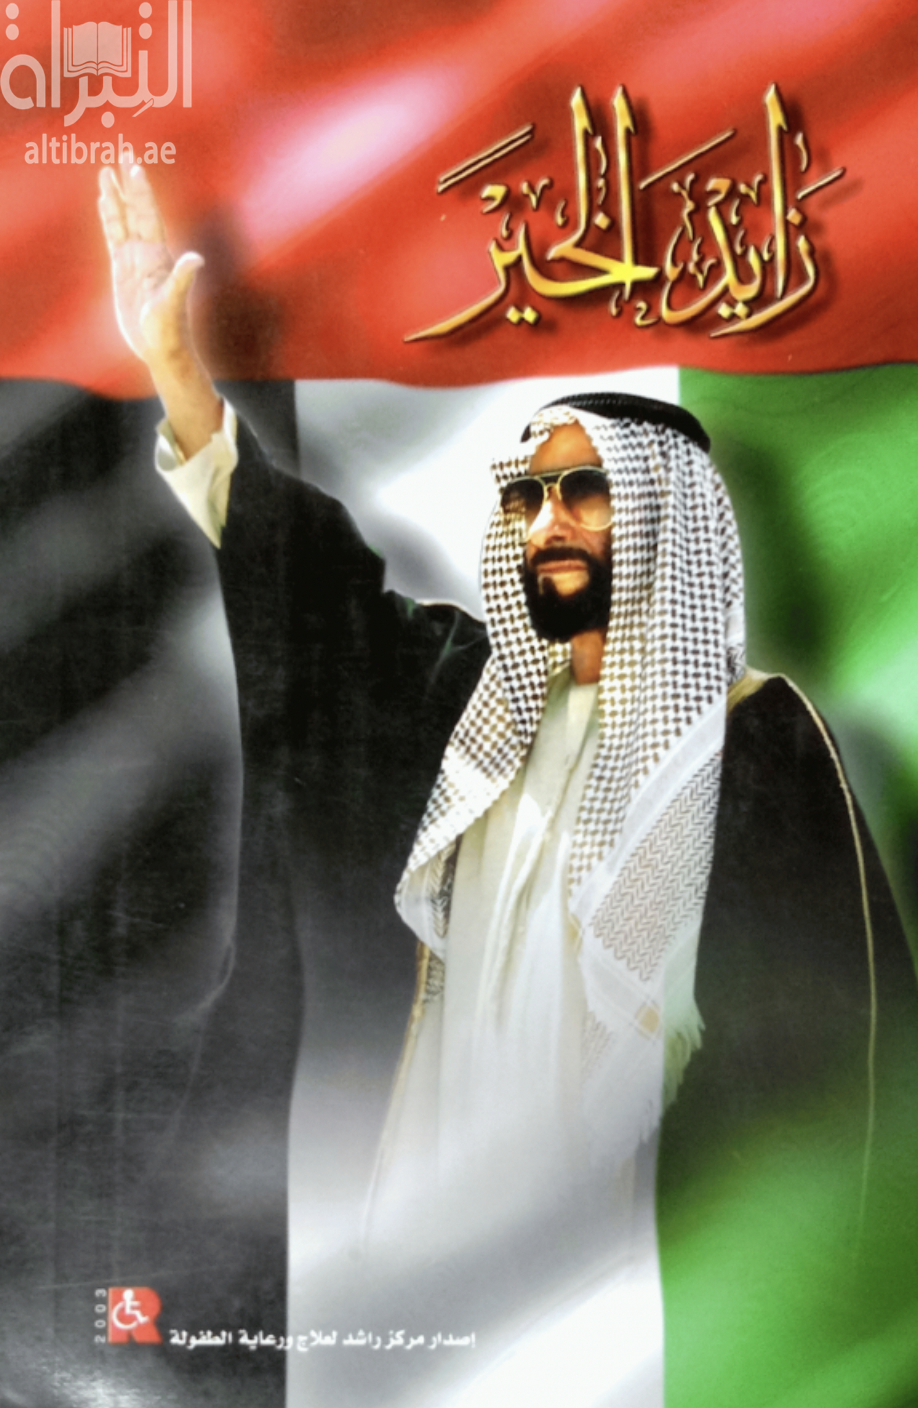 زايد الخير Zayed Al-Khair